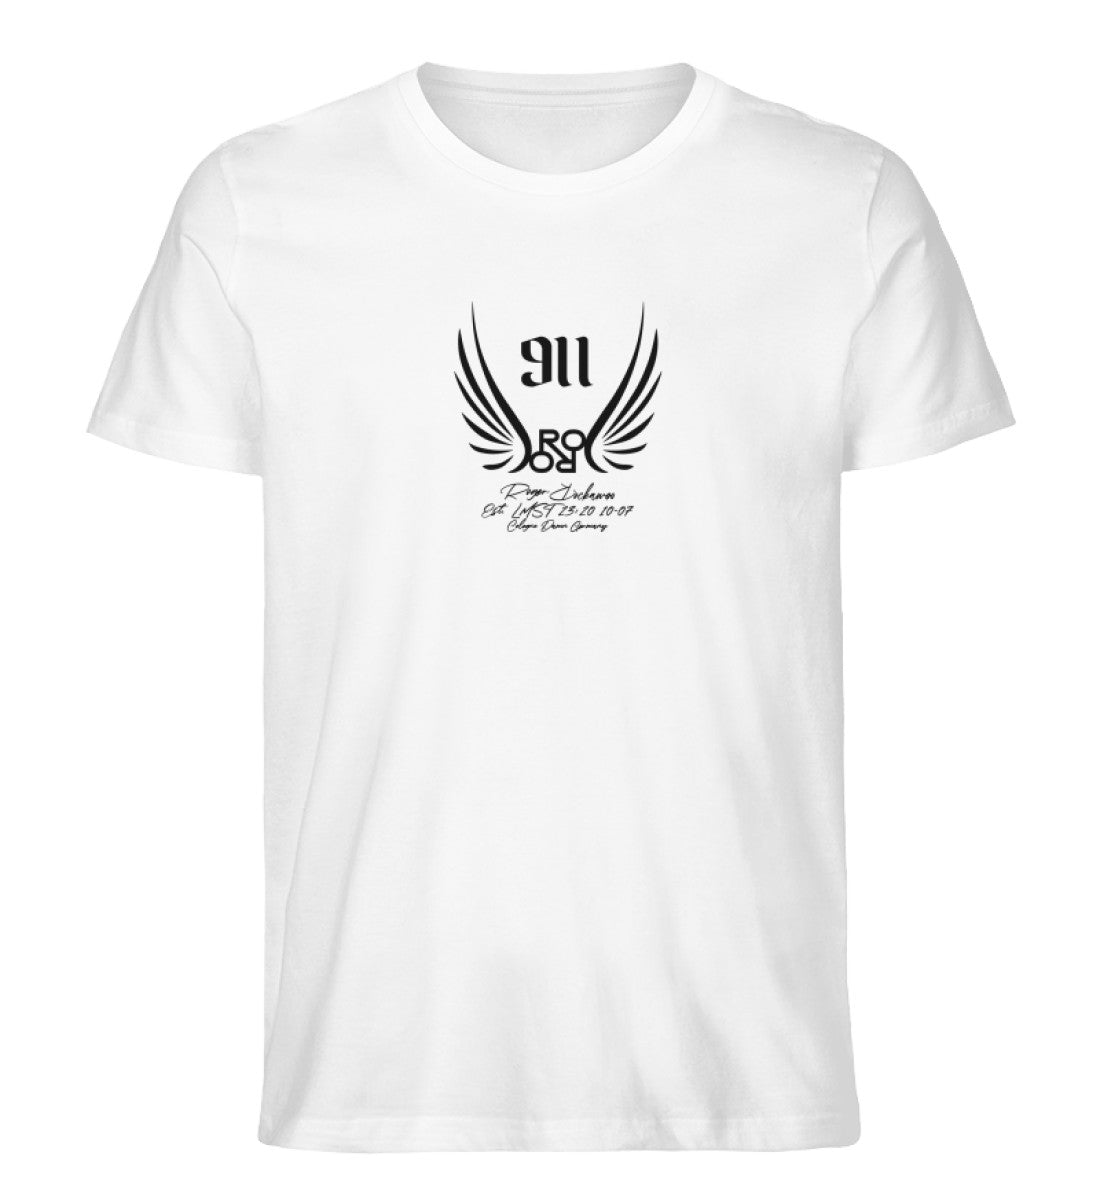 Weißes T-Shirt Unisex für Damen und Herren bedruckt in schwarz mit der Engelszahl 911 und symboloschen Engelsfluegeln und dem Logo von Roger Rockawoo Clothing